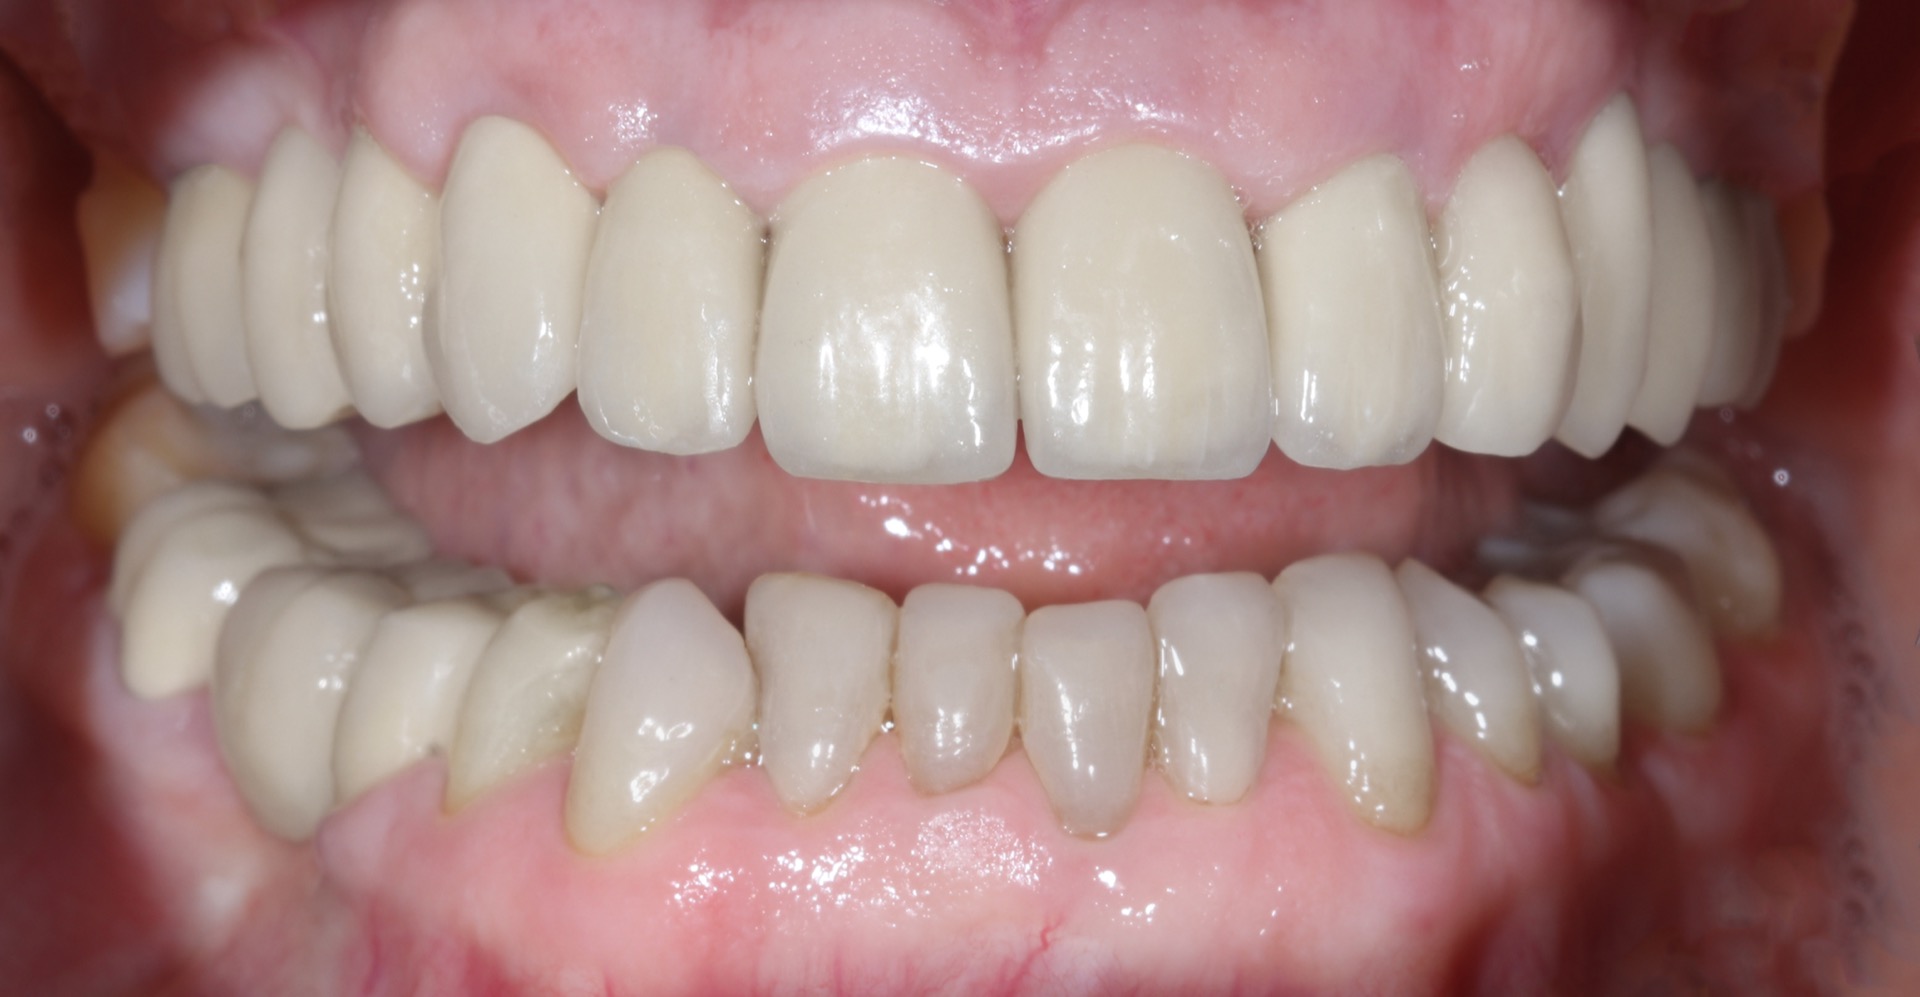 Τελική κατάσταση - Πρόσθια άποψη των αποκαταστάσεων τοποθετημένων στο στόμα (ελαφρώς ανοικτό στόμα) - Αποκατάσταση της αισθητικής και της σύγκλεισης της ασθενούς